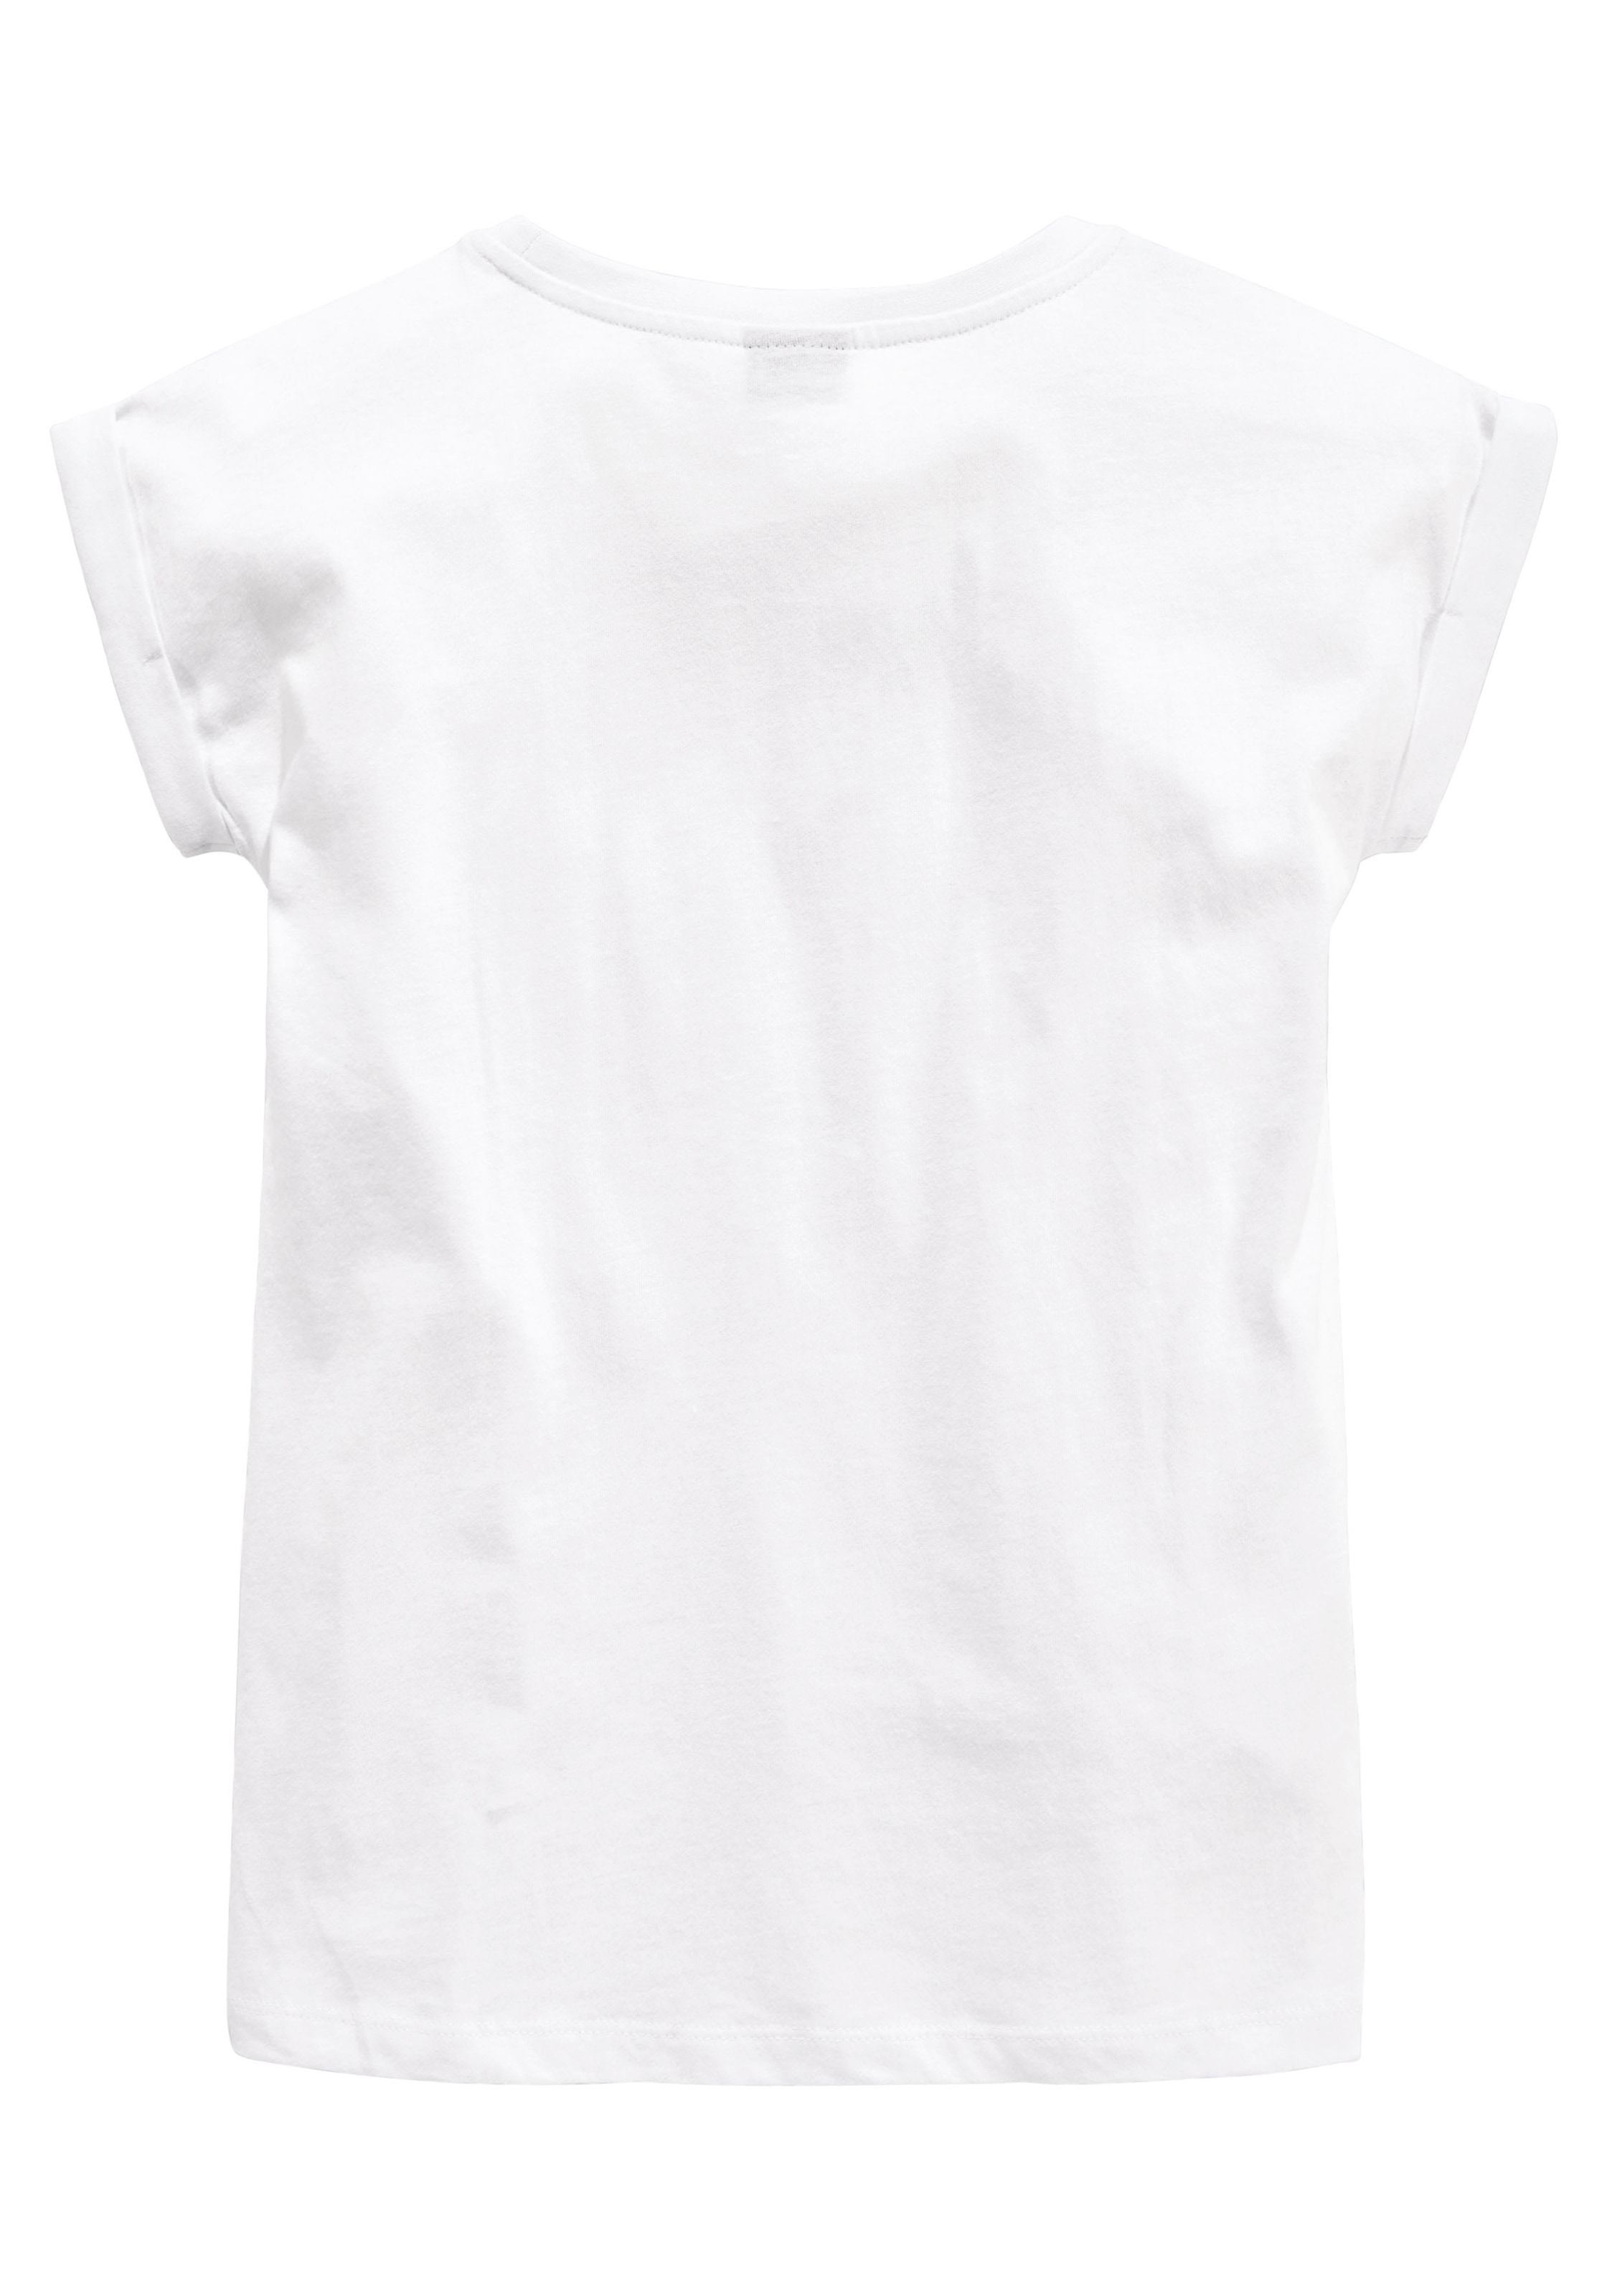 mit | ich coolem Spruch ✵ KIDSWORLD es »Ja kaufen online ...«, Jelmoli-Versand kann T-Shirt